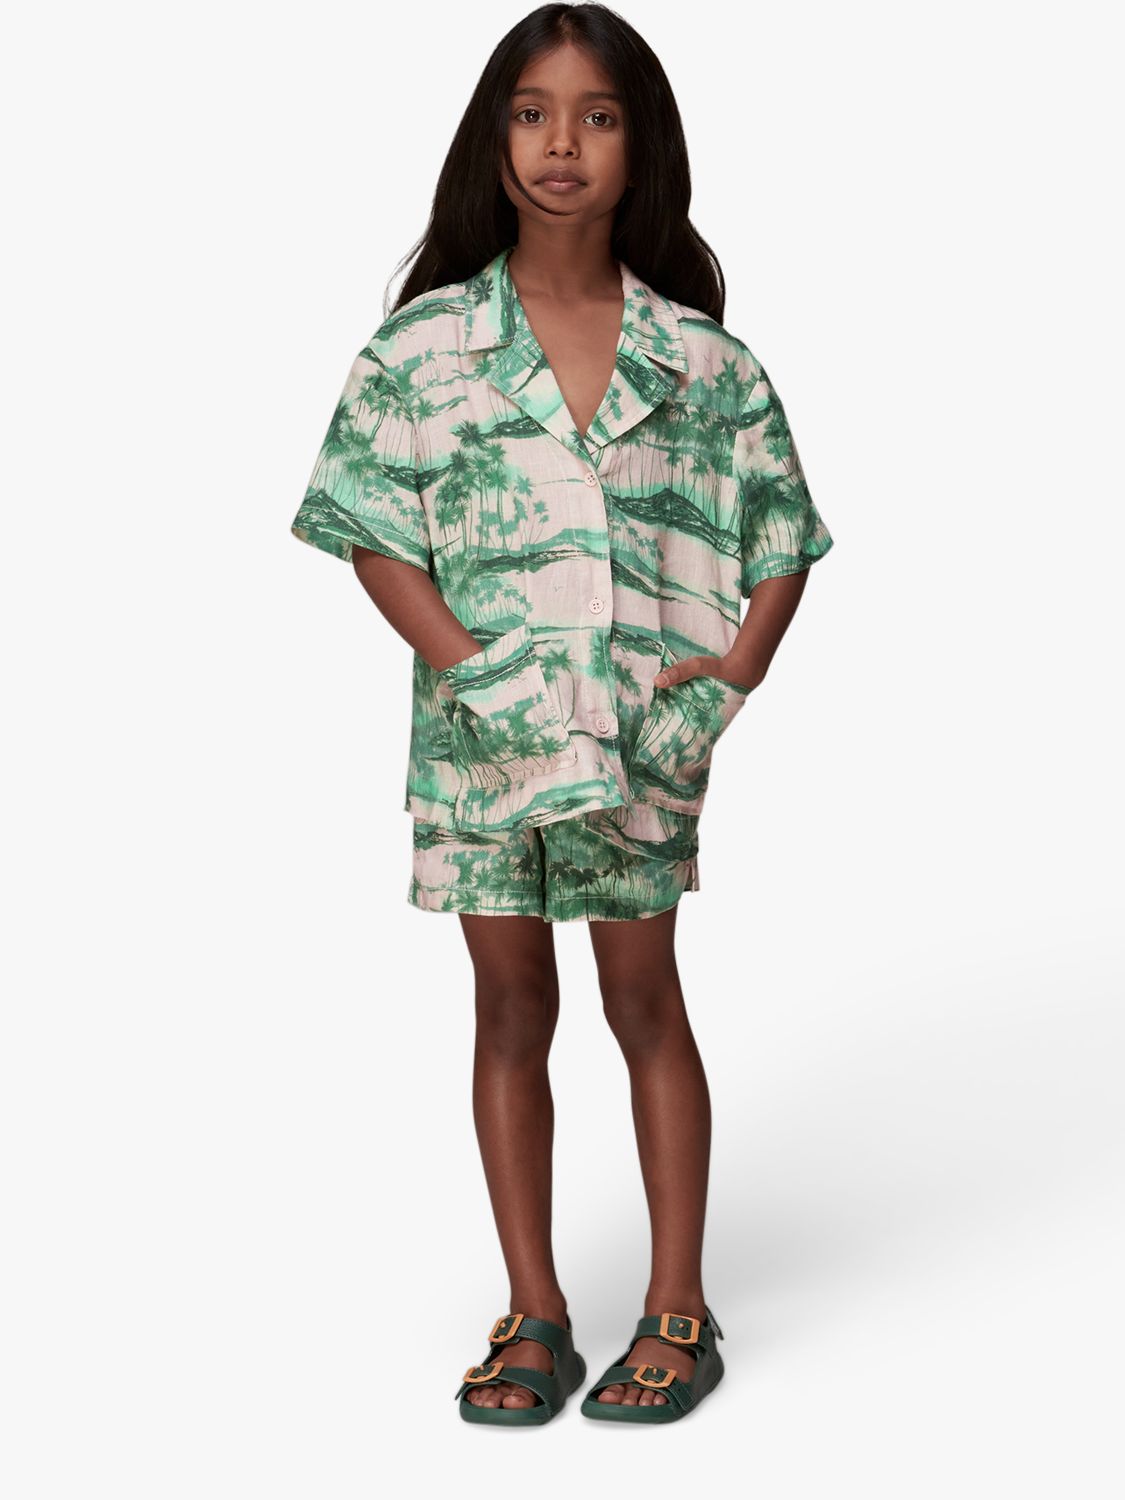 Buy Whistles Kids' Sammy Waving Palms Shirt, Pink/Multi Online at johnlewis.com